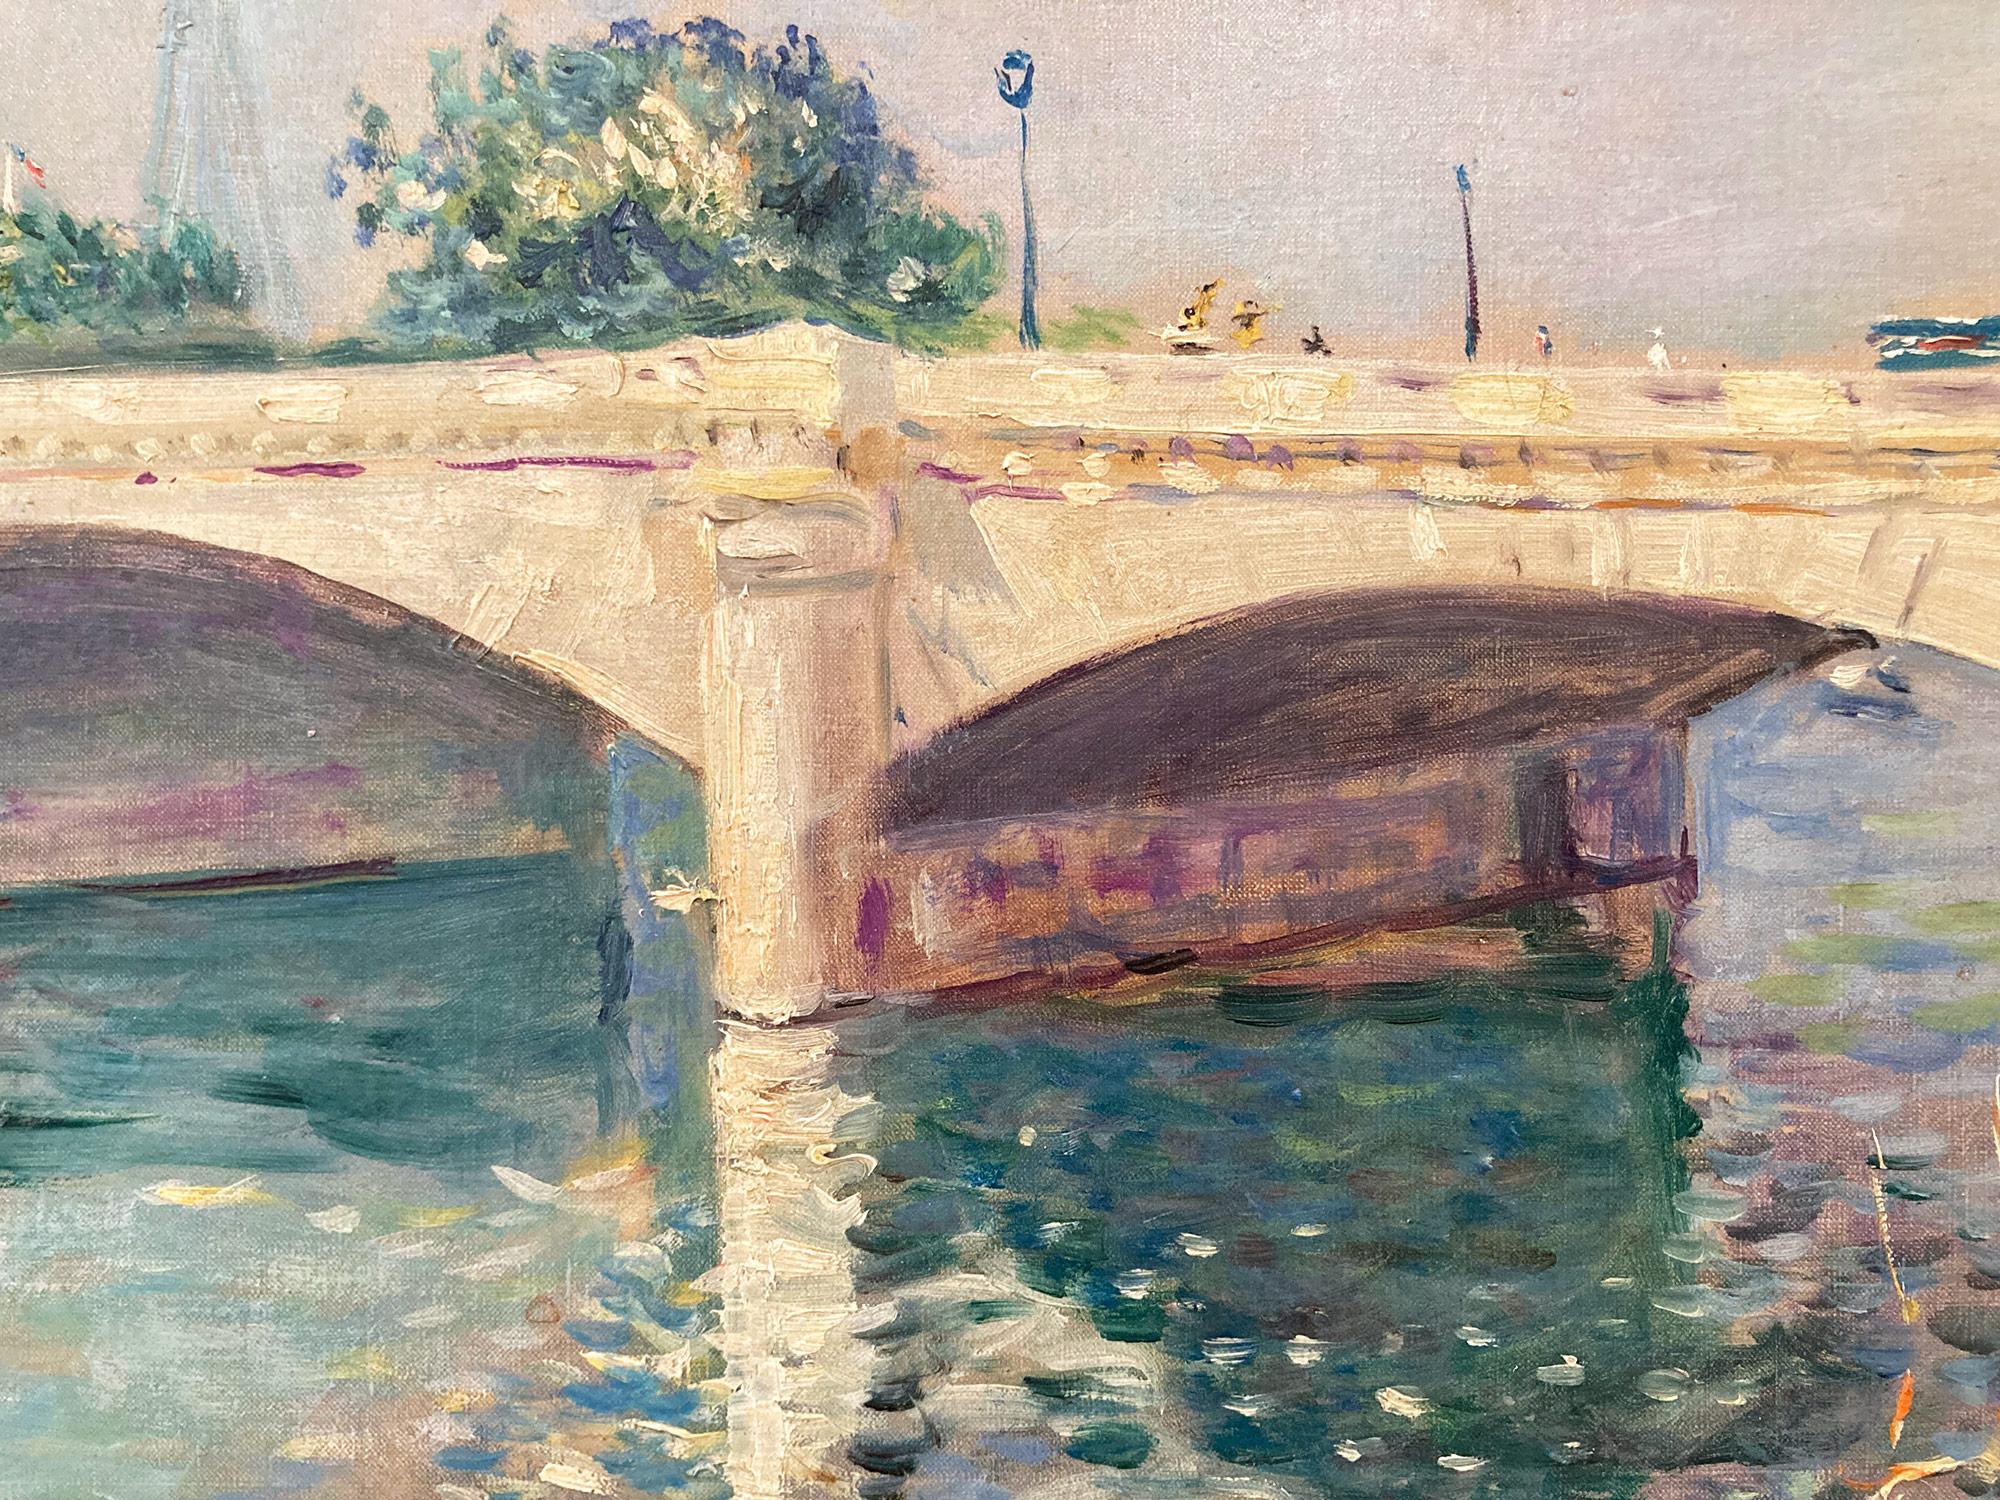 Cette œuvre de Lucien Adrion est une merveilleuse représentation de ses œuvres impressionnistes représentant le pont de la Concorde traversant la Seine à Paris avec la tour Eiffel au loin. Utilisant une palette de couleurs vives, Adrion exécute